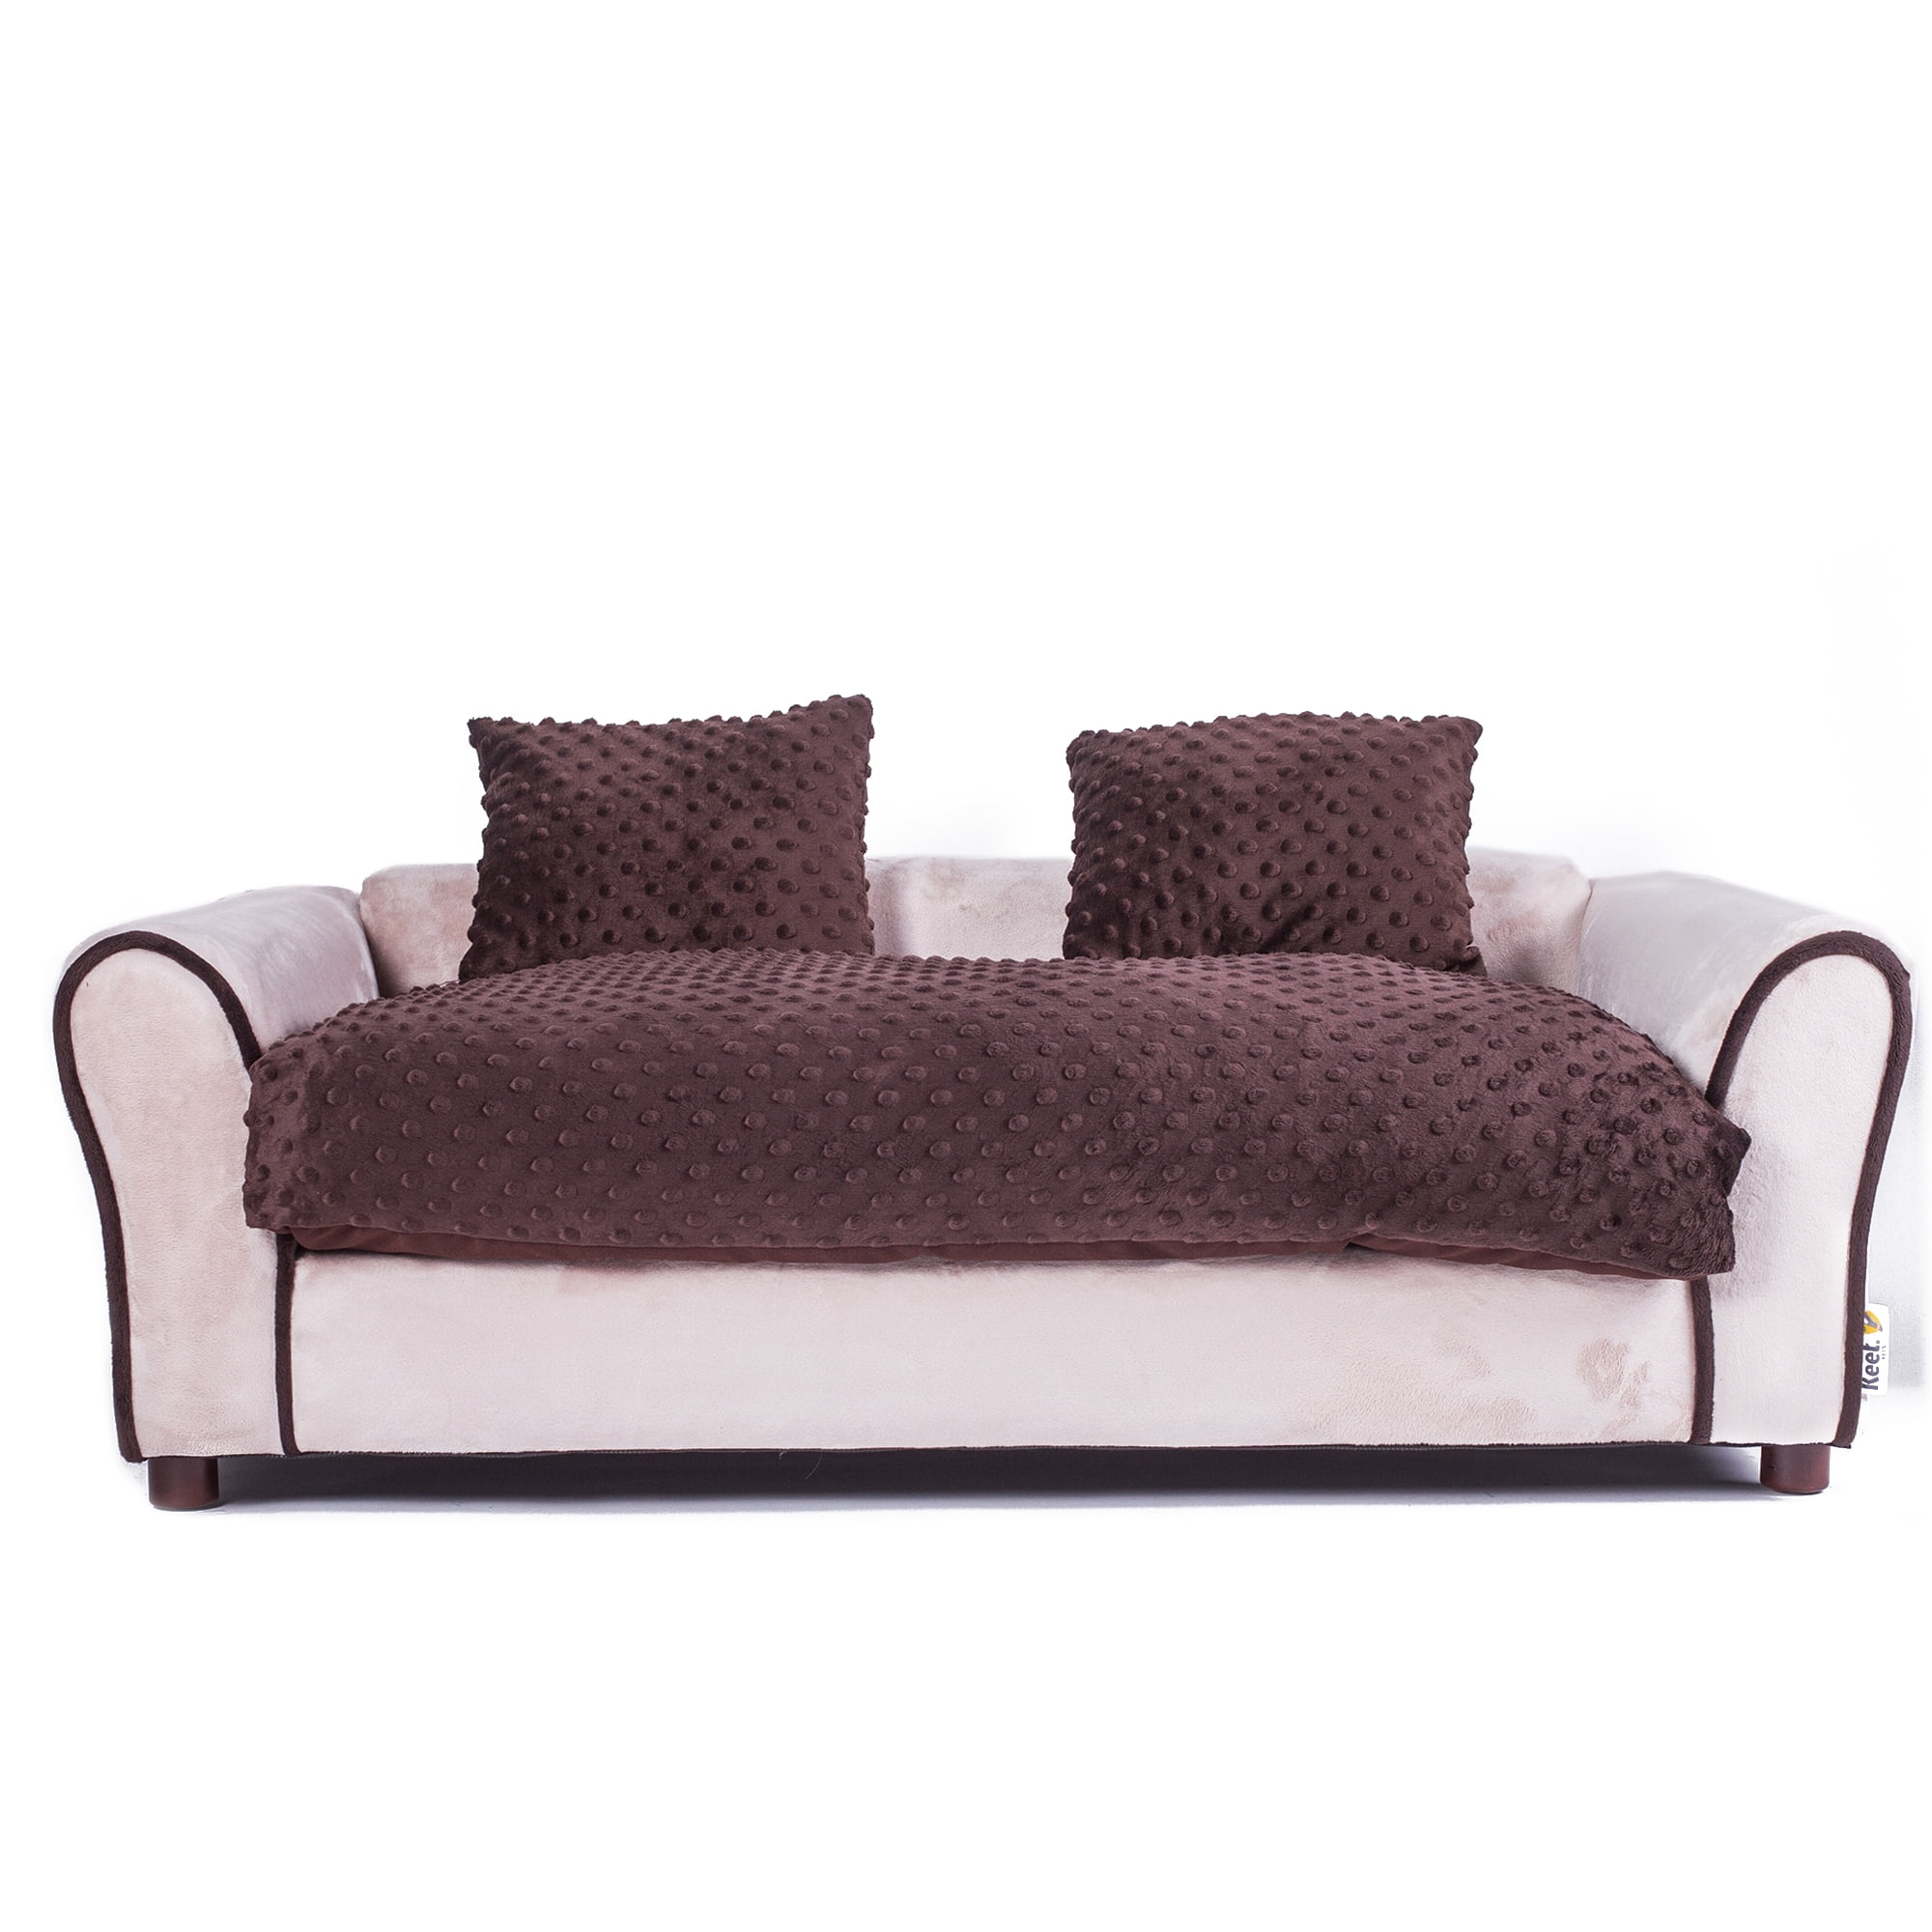 Keet Westerhill Pet Sofa Bed Com